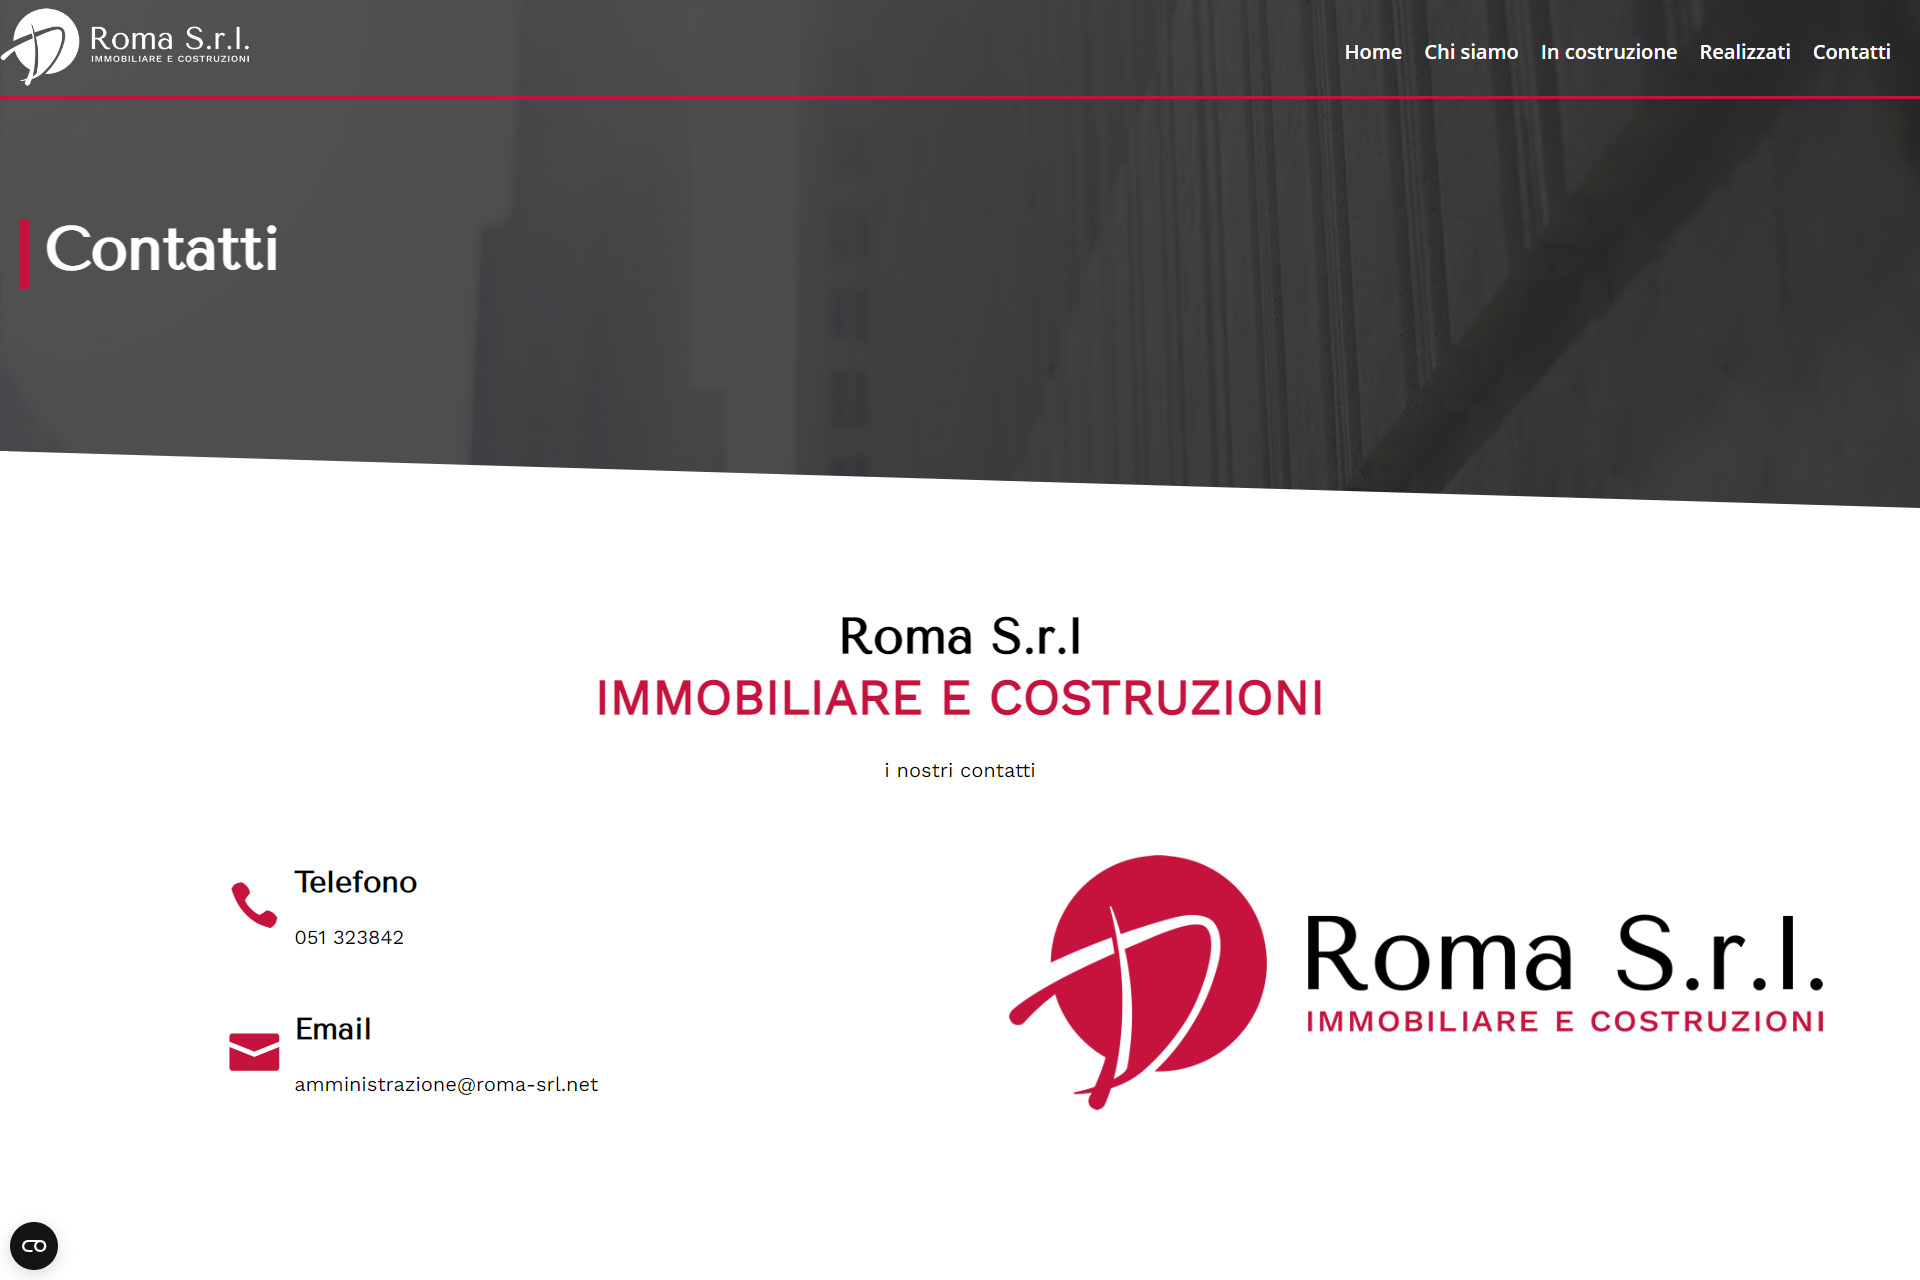 lv-design-realizzazione-siti-web-bologna-portfolio-roma-srl-immobiliare-e-costruzioni-slide-3